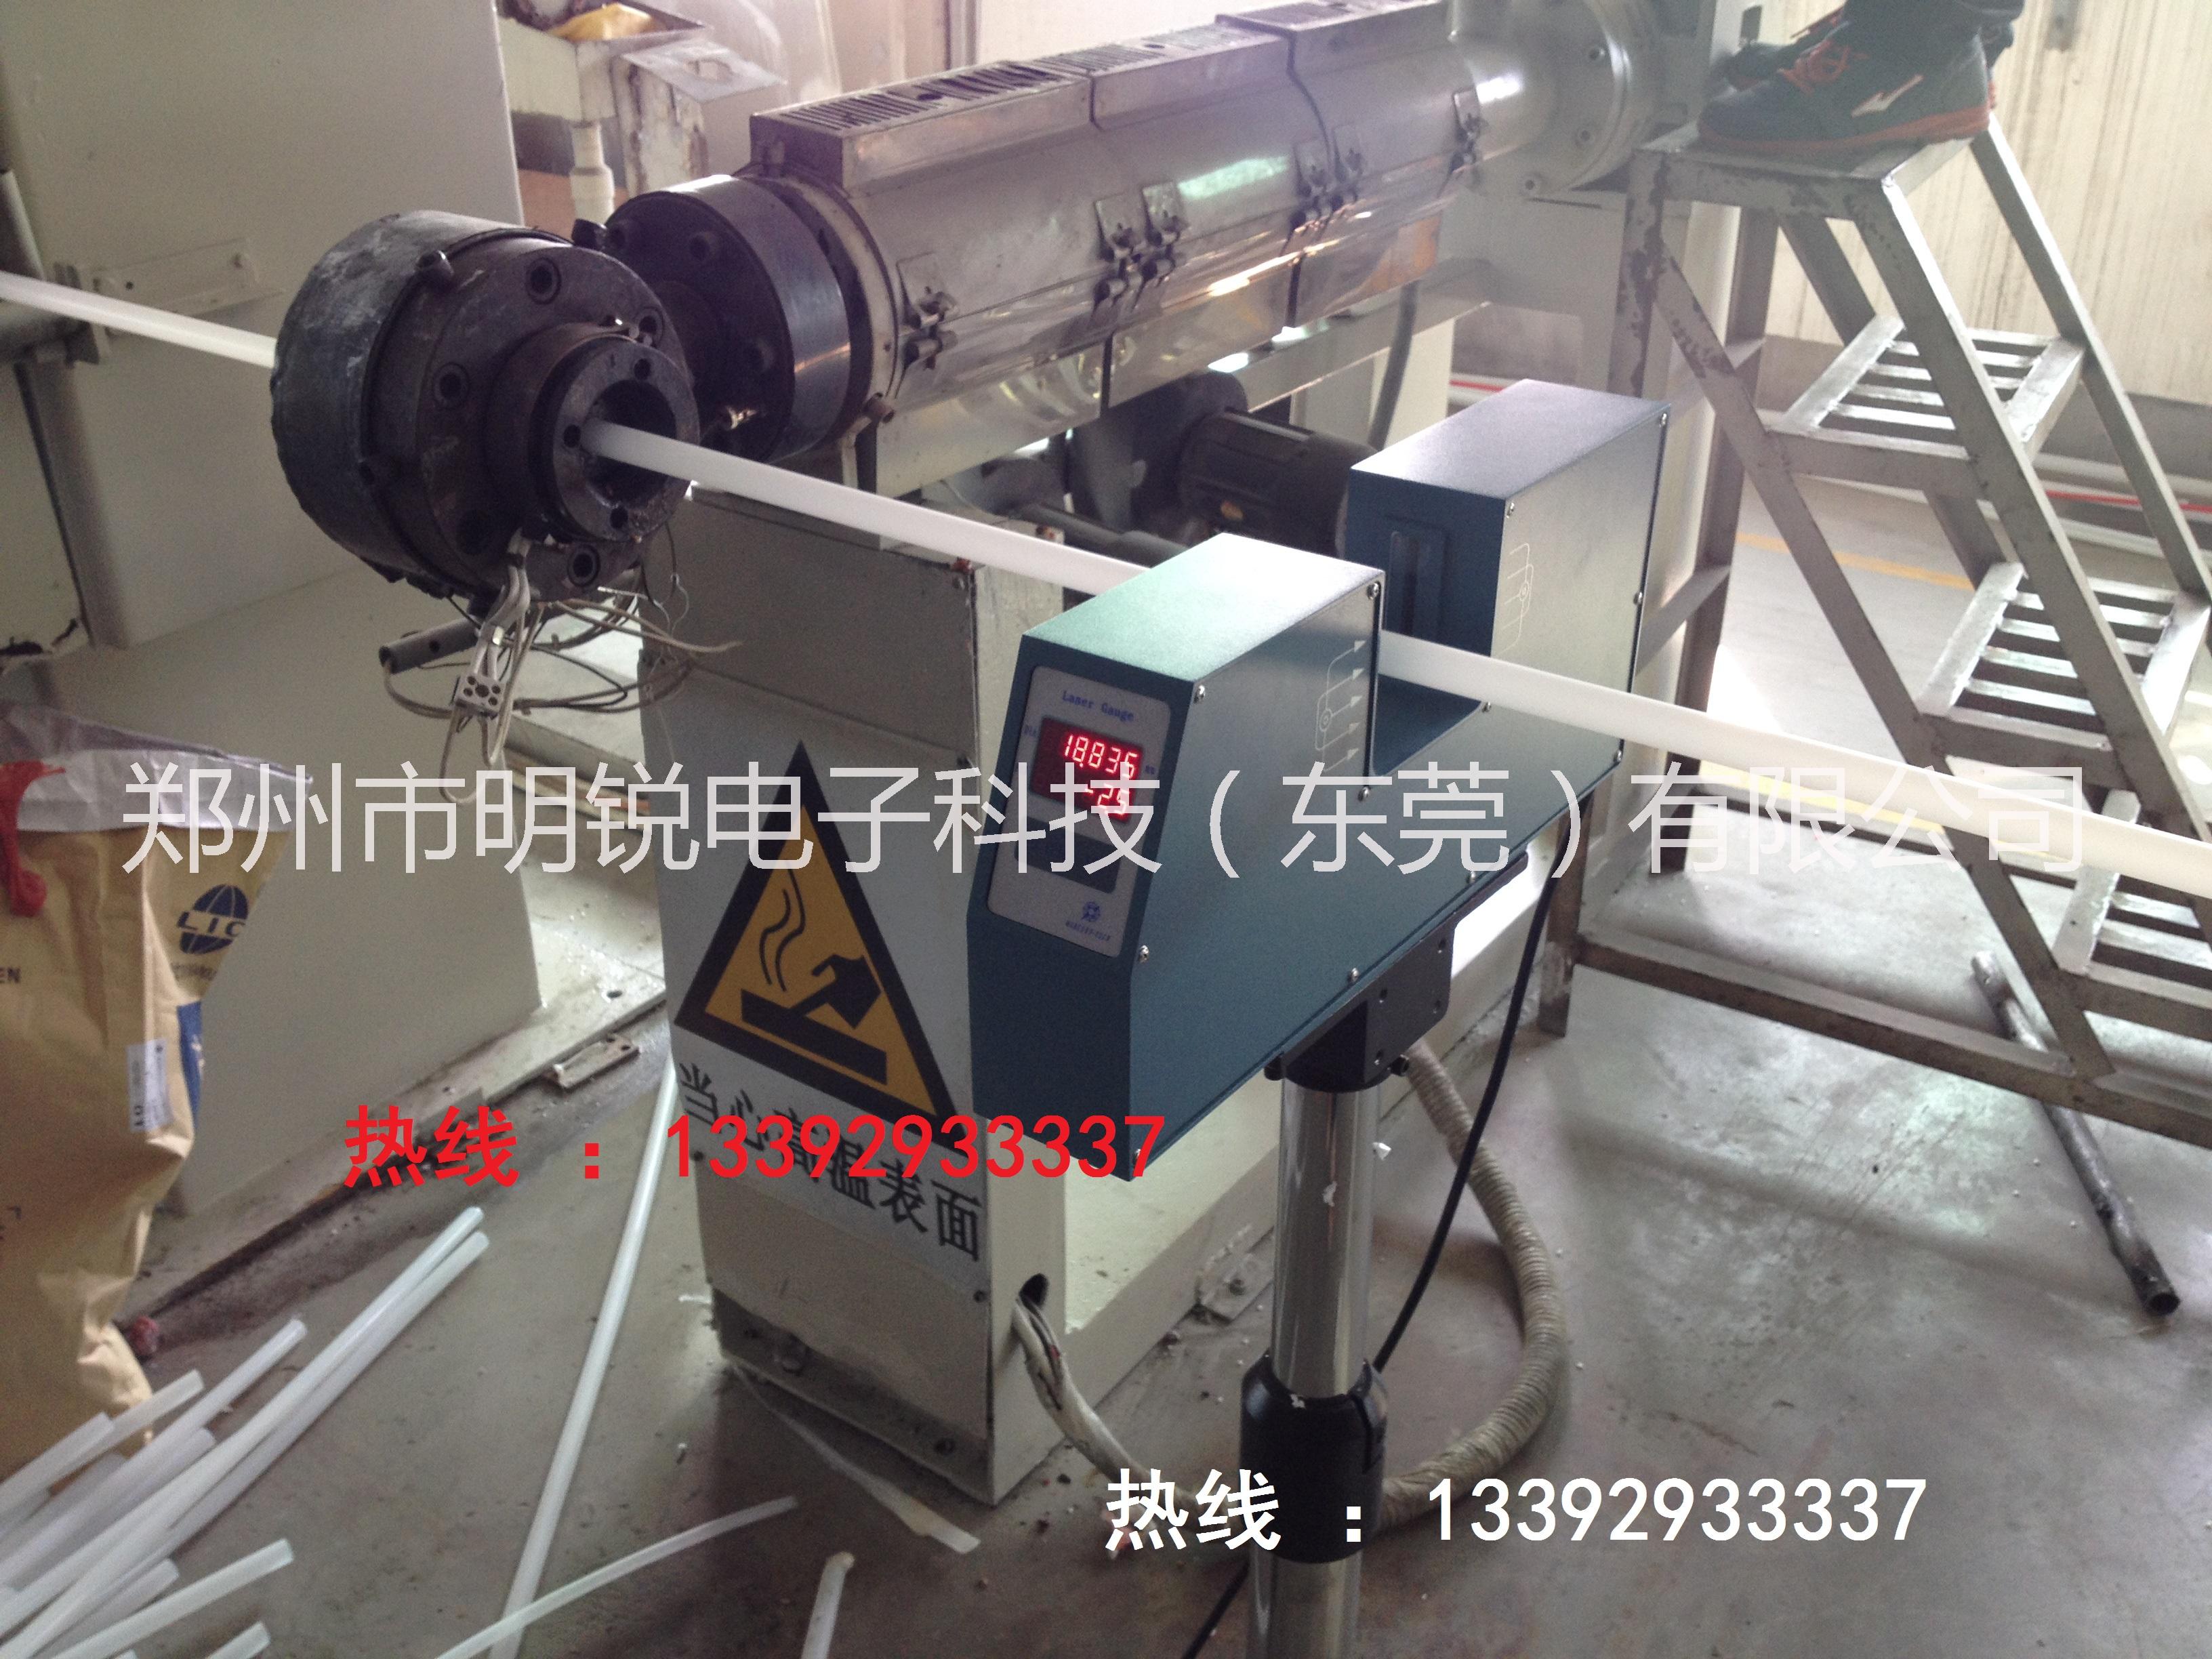 供应胶管外径激光测量仪 激光测径仪 胶管外径激光测量仪图片